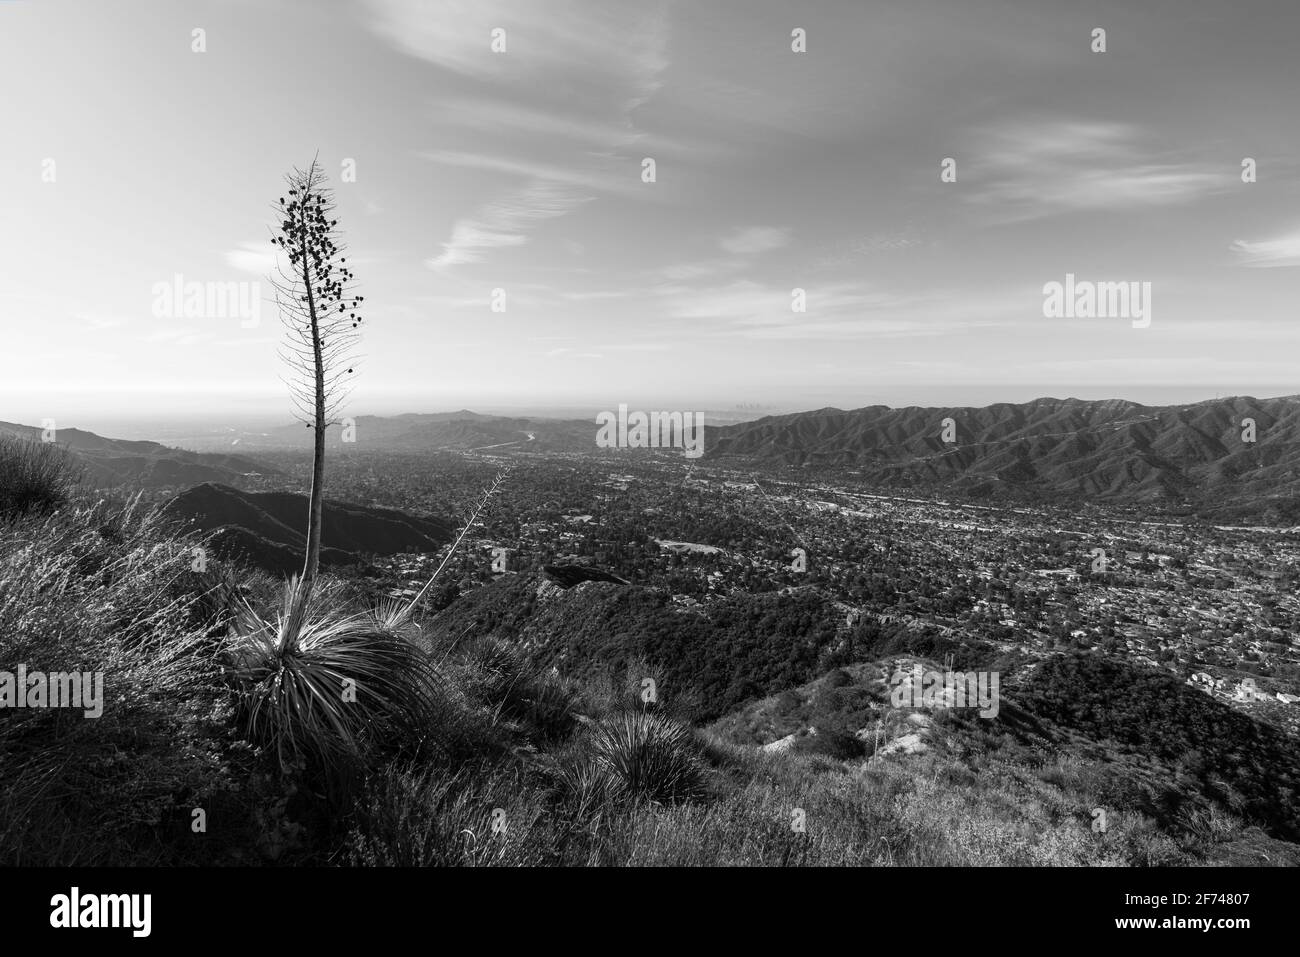 Vista in bianco e nero di la Crescenta, Montrose e Verdugo Mountain dal monte Lukens nella contea di Los Angeles, California. Foto Stock